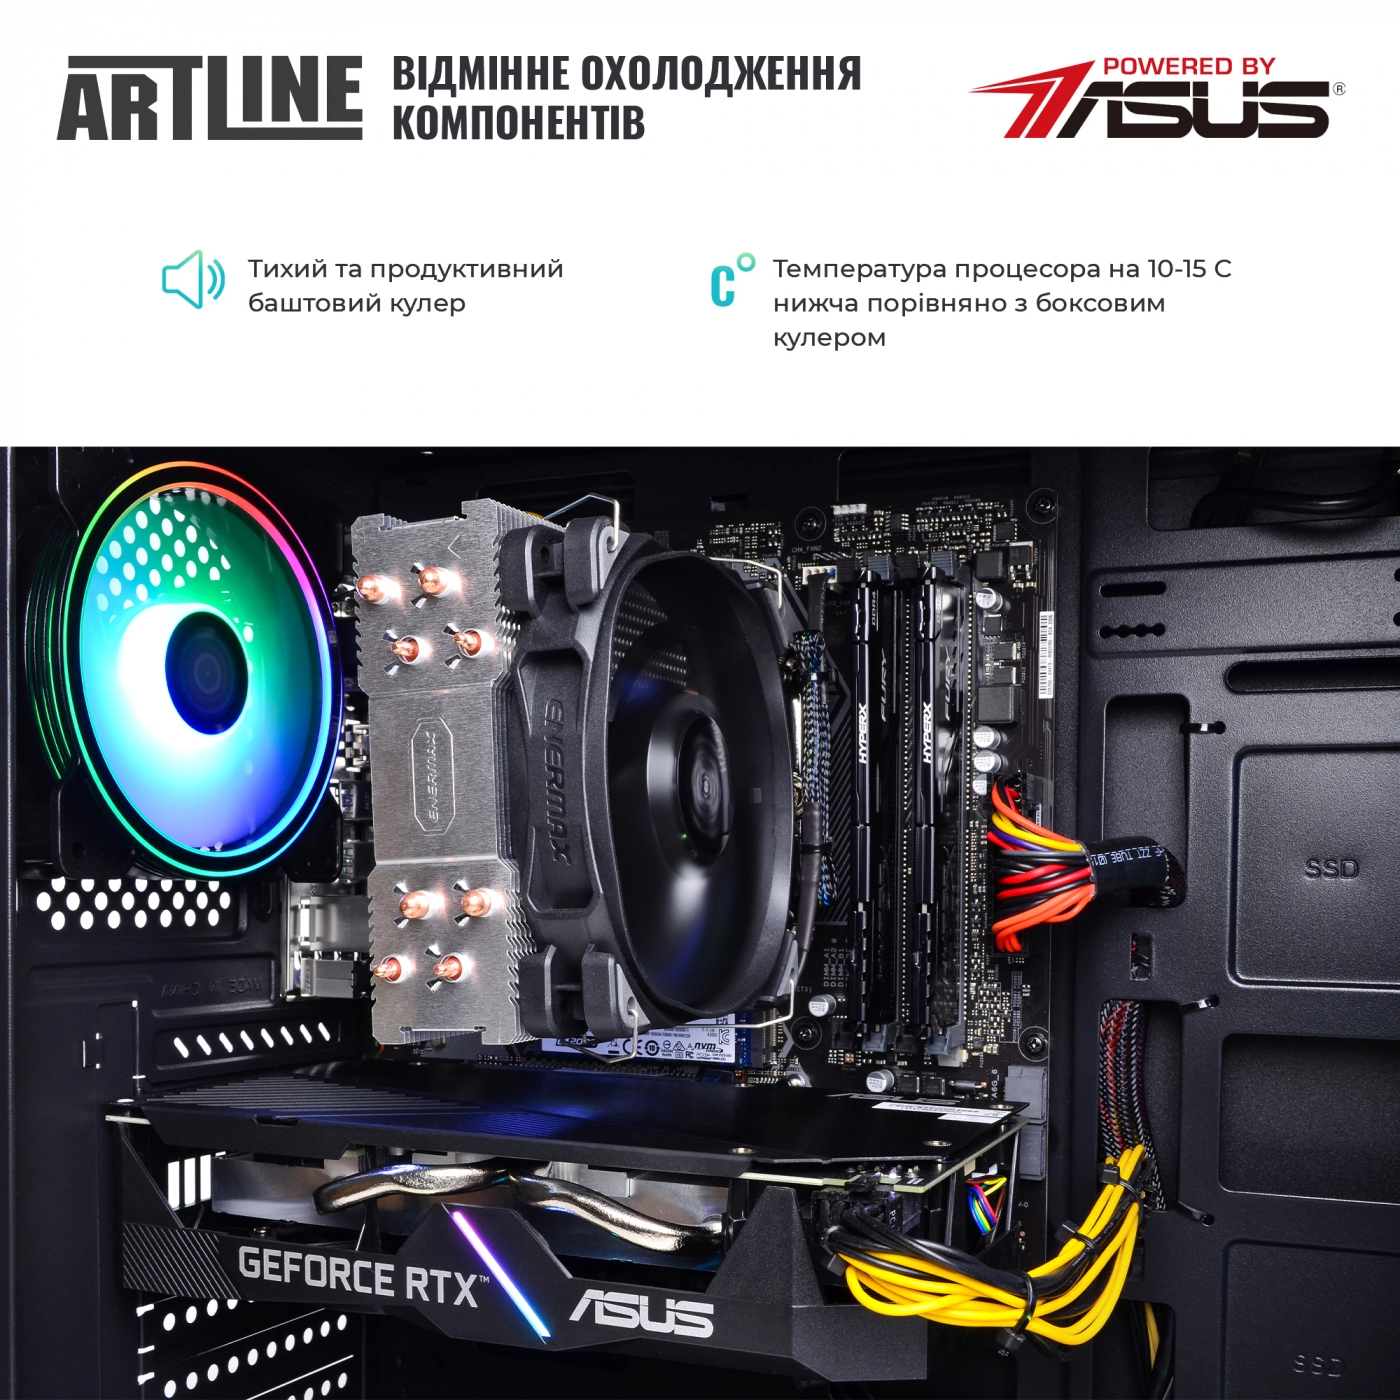 Купить Компьютер ARTLINE Gaming X73v26 - фото 7